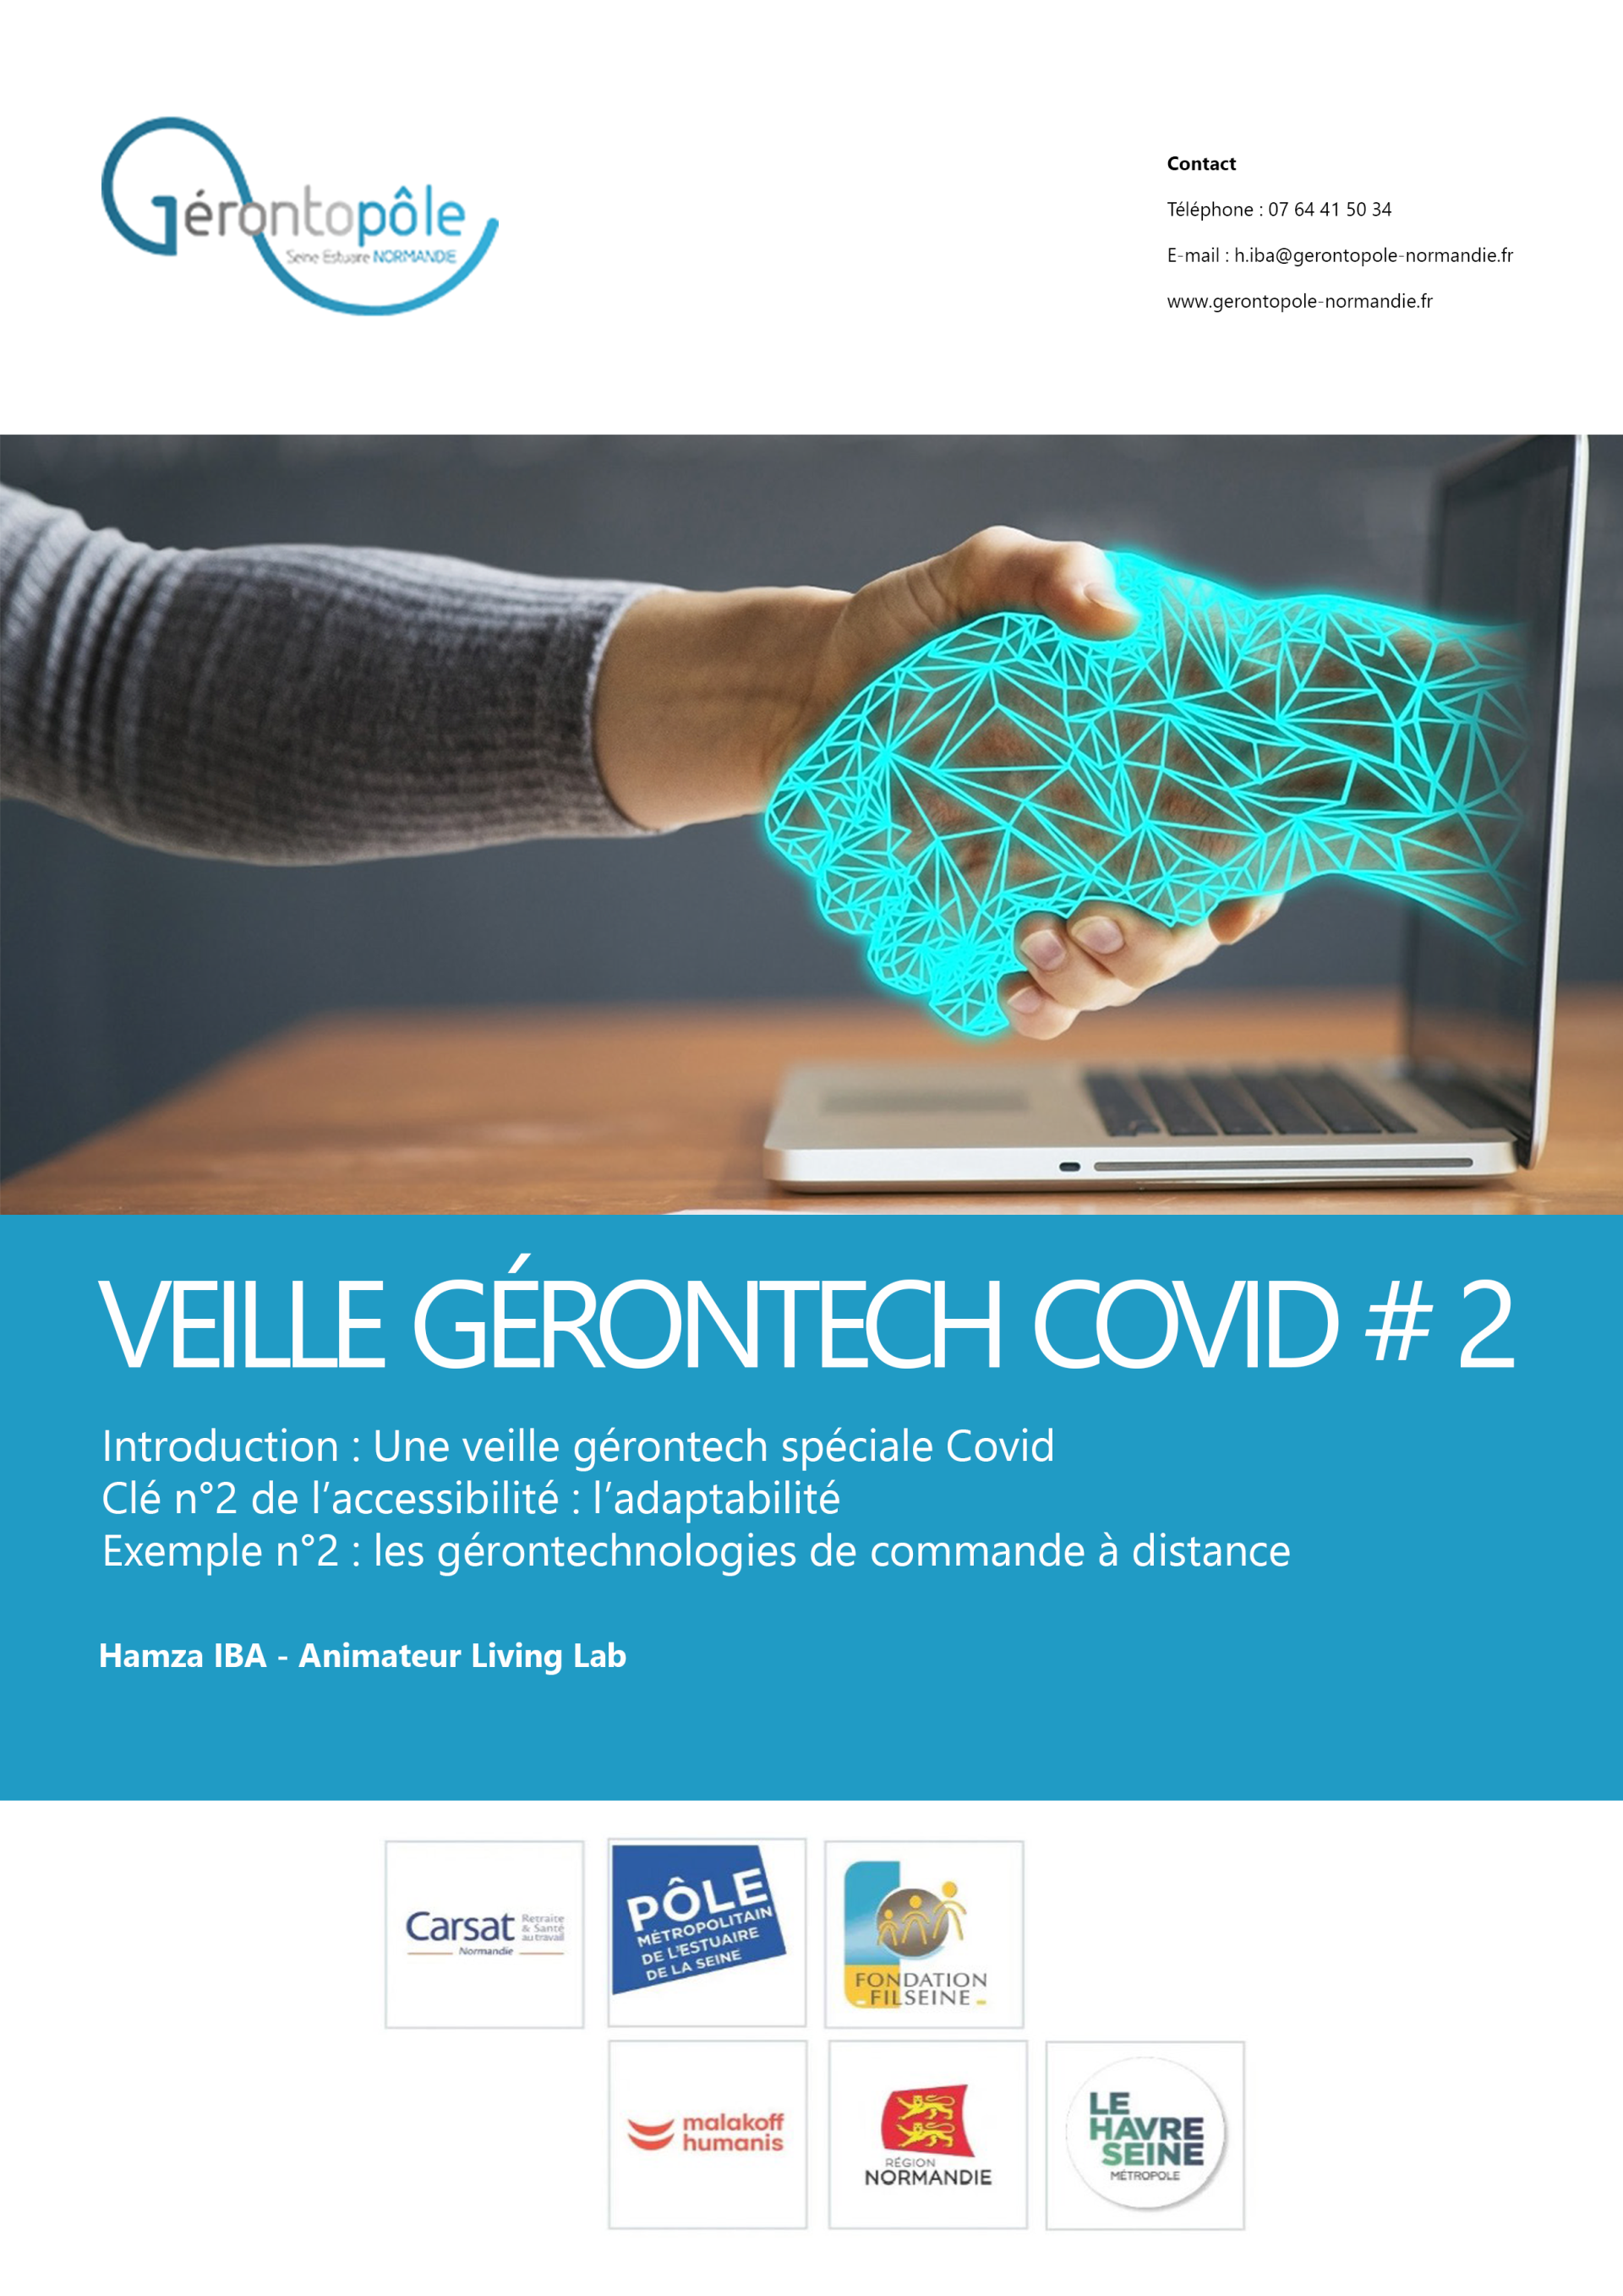 Veille Gérontech'Covid 2